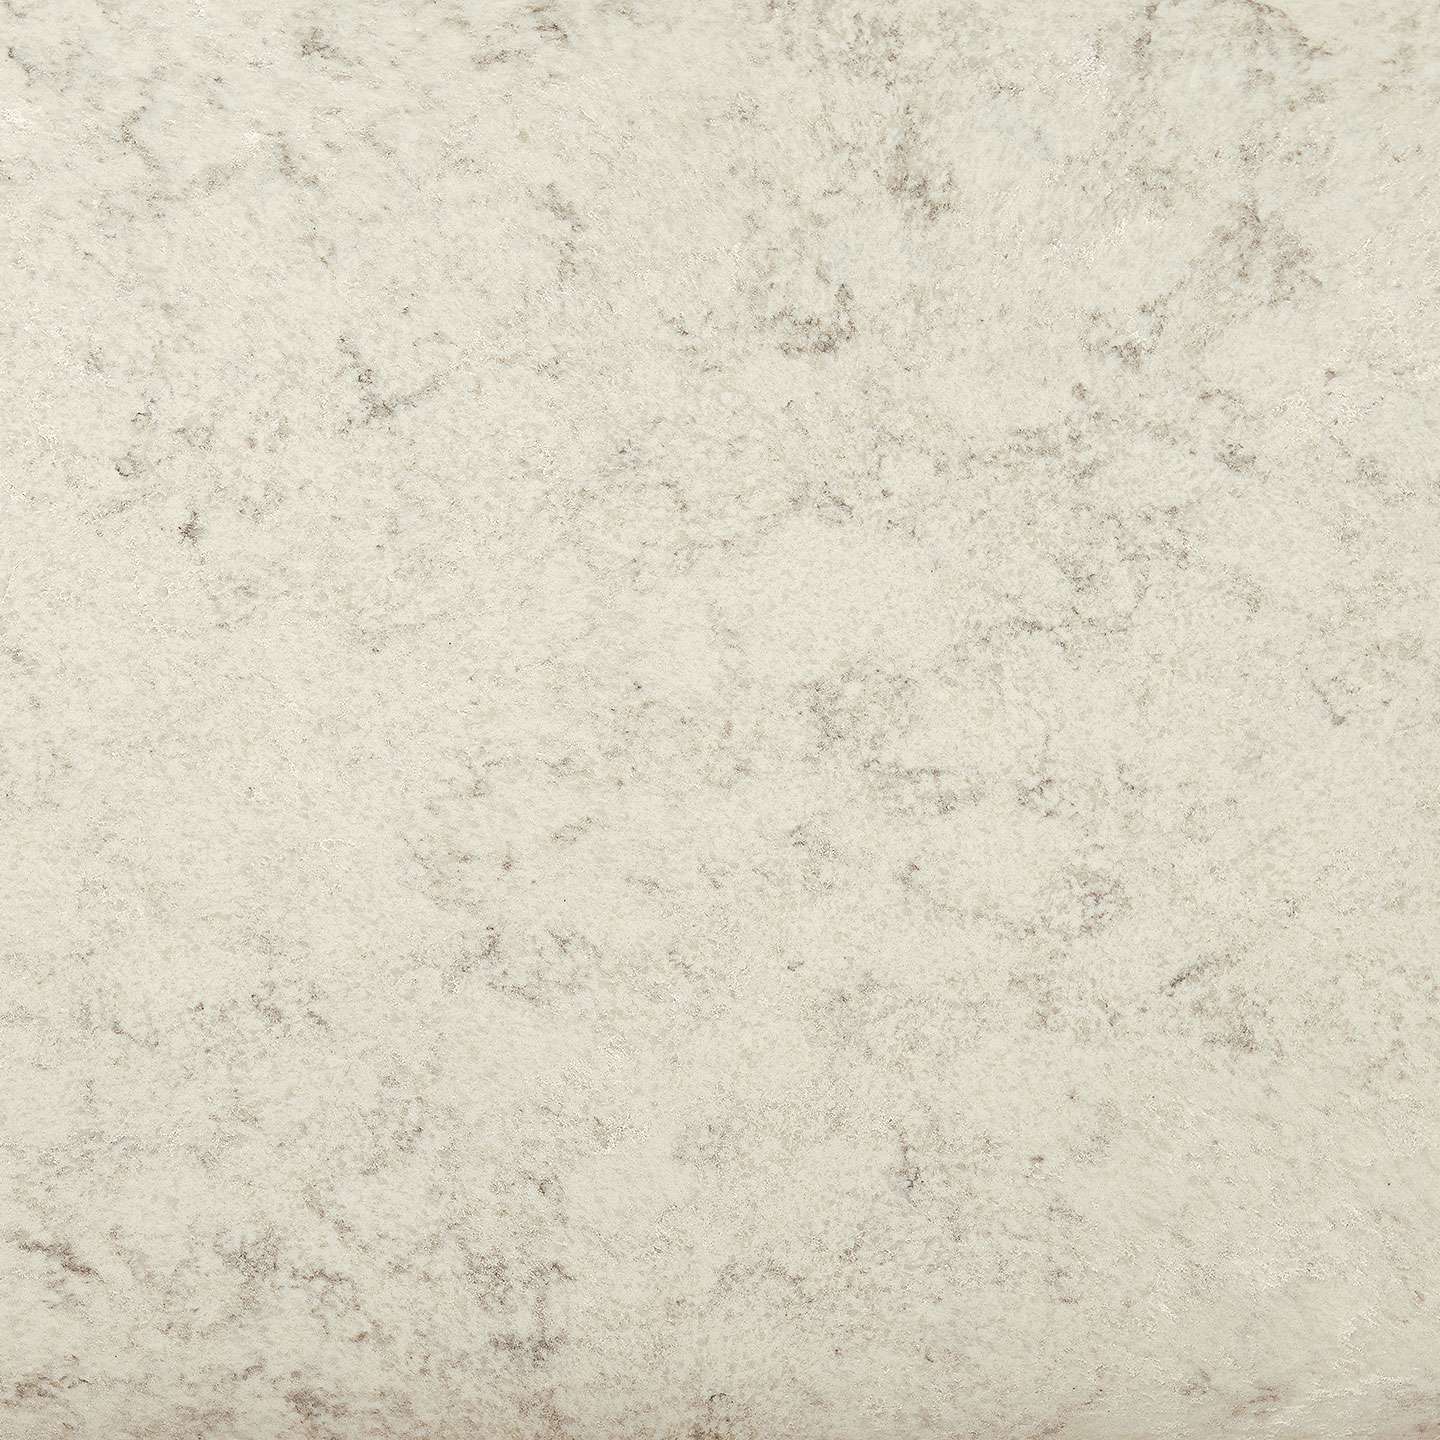 Corian Quartz Majestic Marble Granite